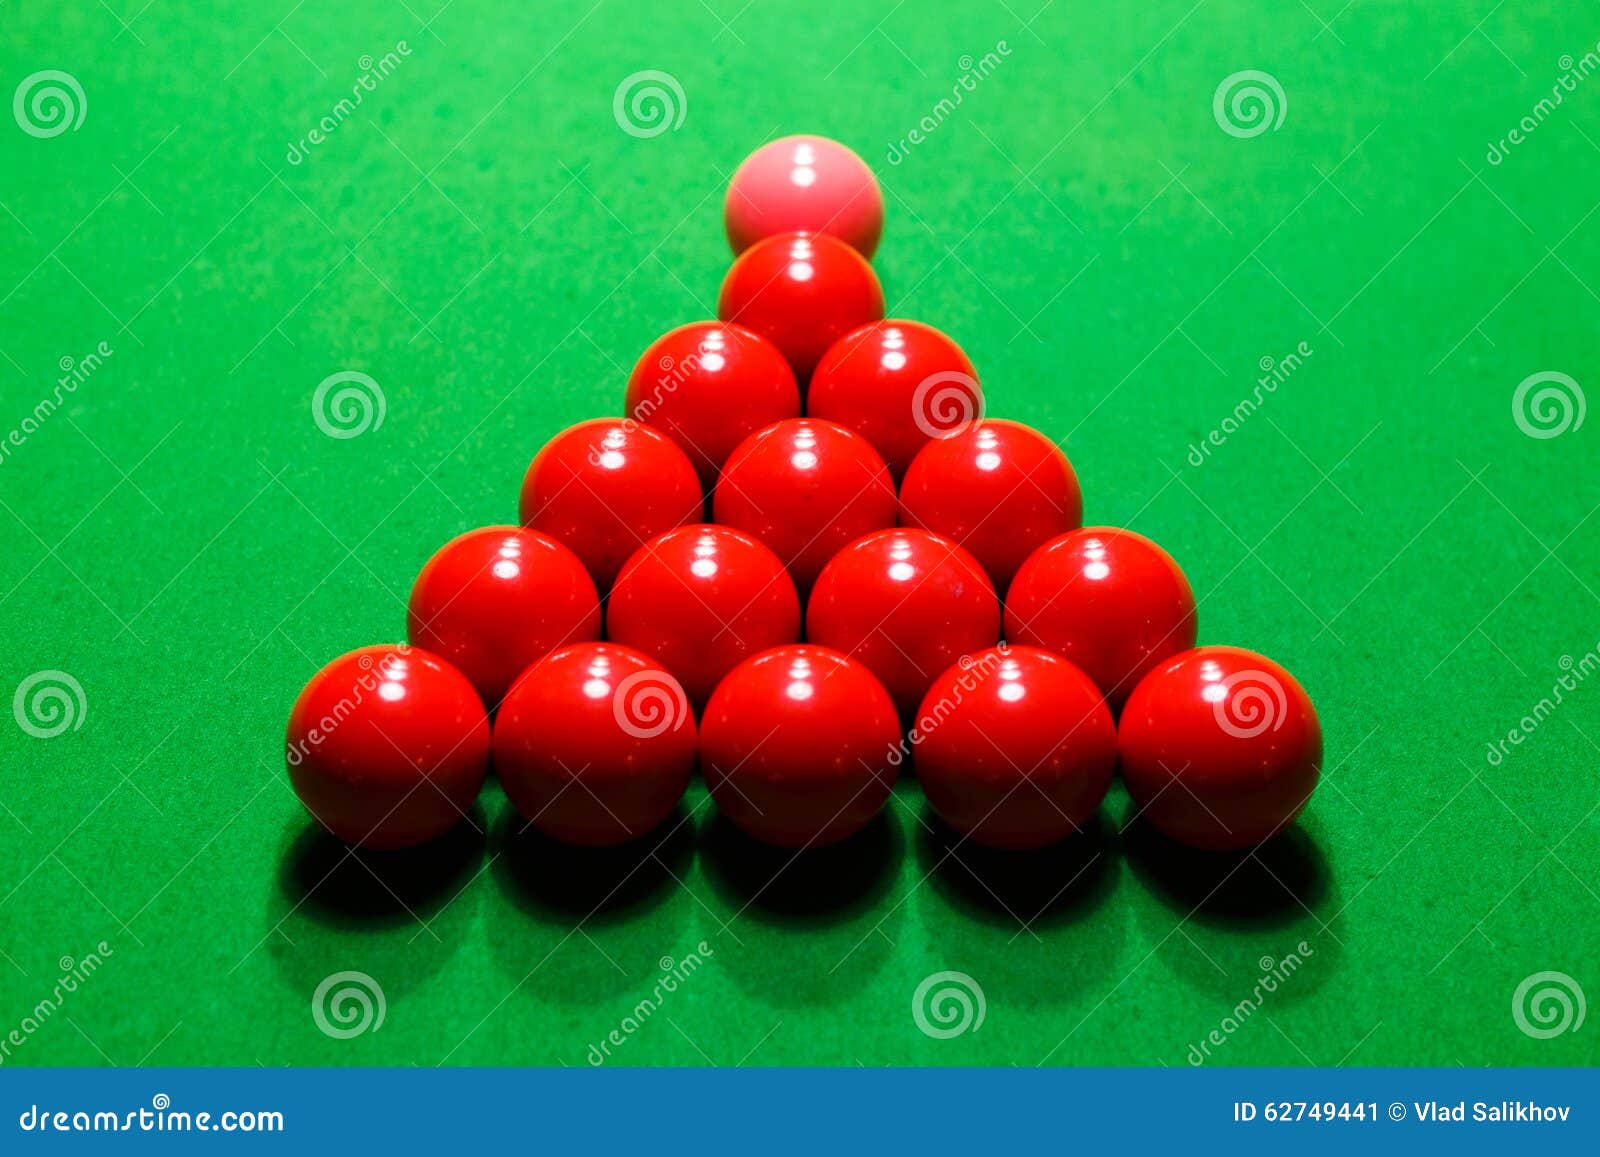 Красных шаров было на 7. Вид сверху стол красные шары. Красные шары в русской пирамиде. Снукер шар логотип. Красные шары в черной комнате.